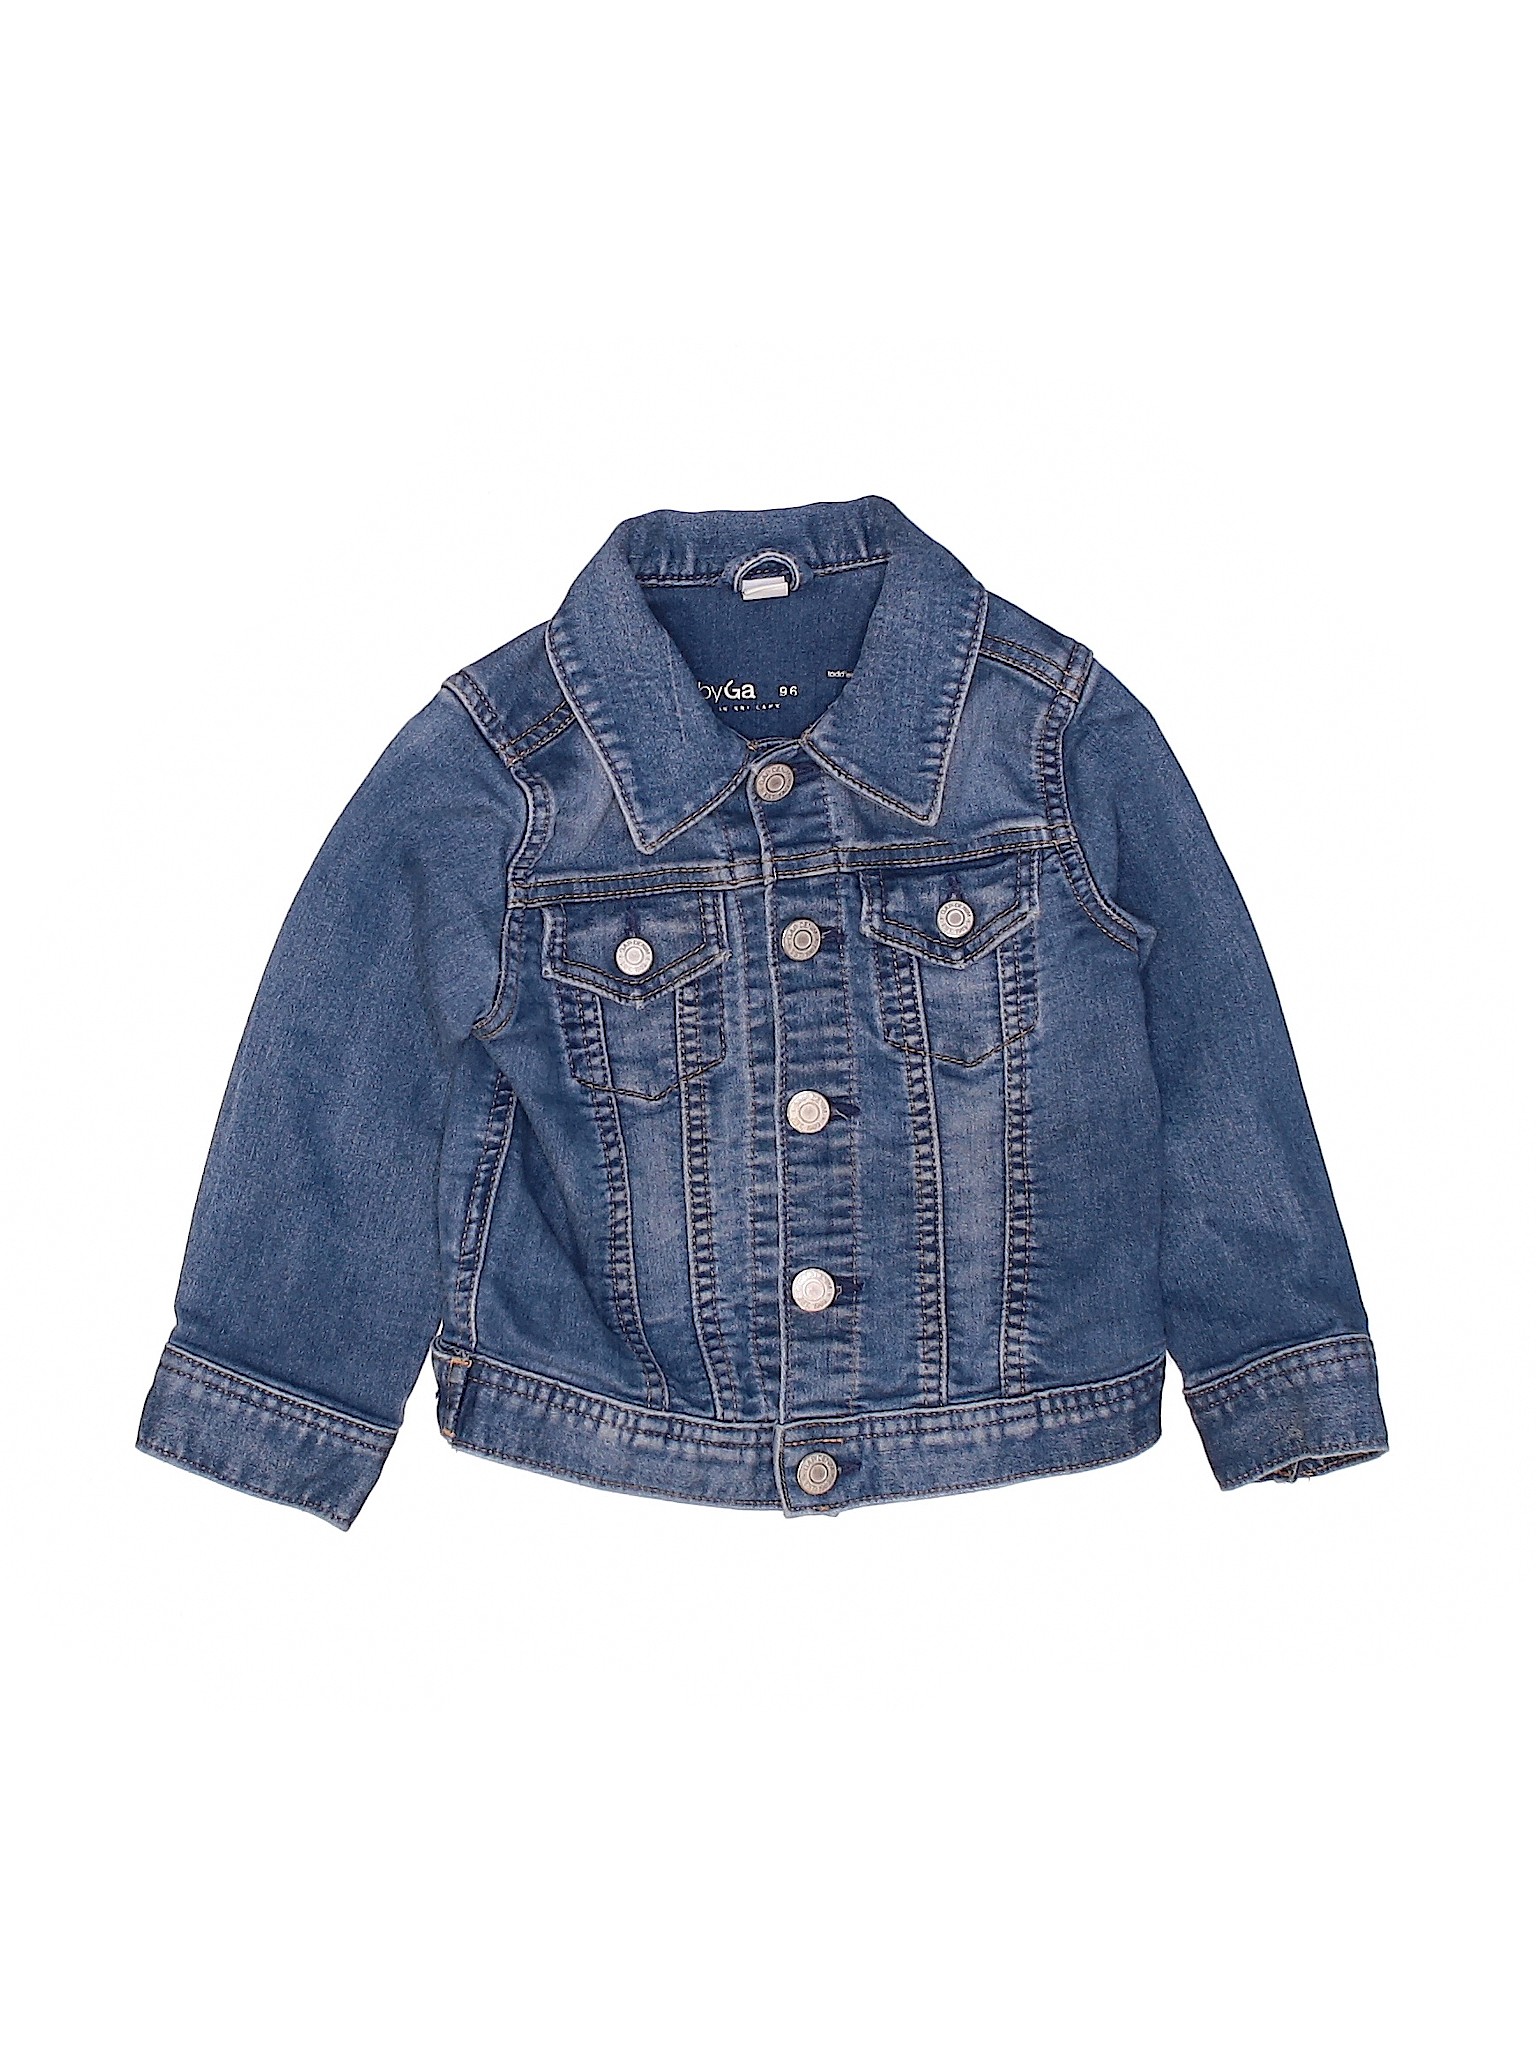 Baby Gap Girls Blue Denim Jacket 2T | eBay